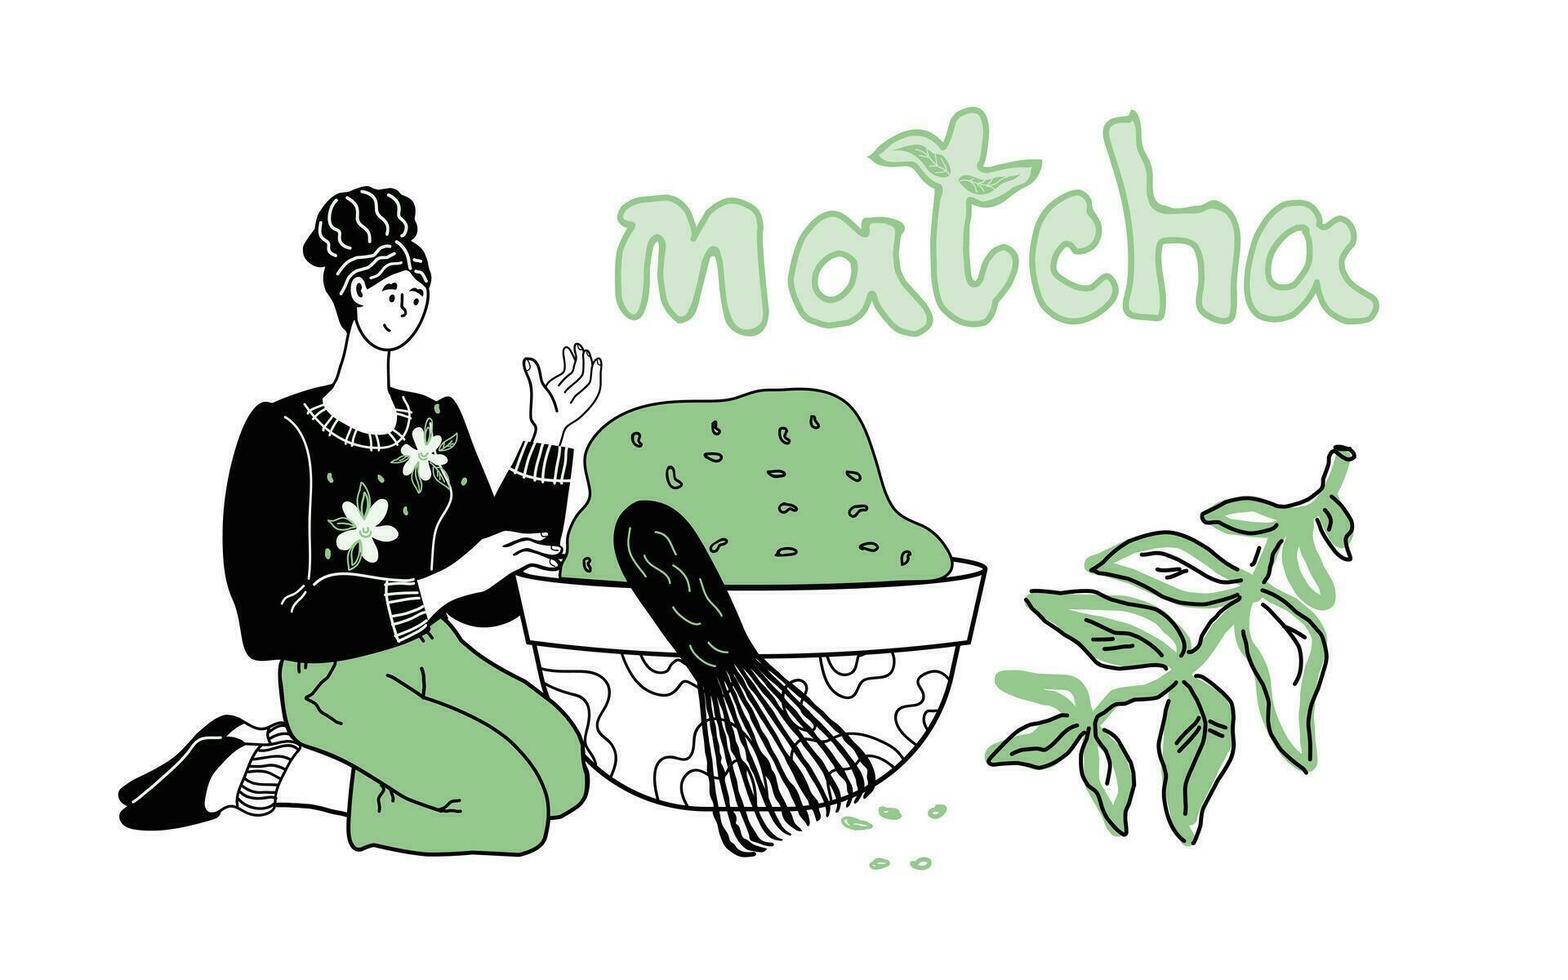 donna preparazione matcha tè cartone animato vettore illustrazione. bandiera o carta di giapponese o Cinese verde matcha tè nel mano disegnato stile per confezione o casa da tè bar.